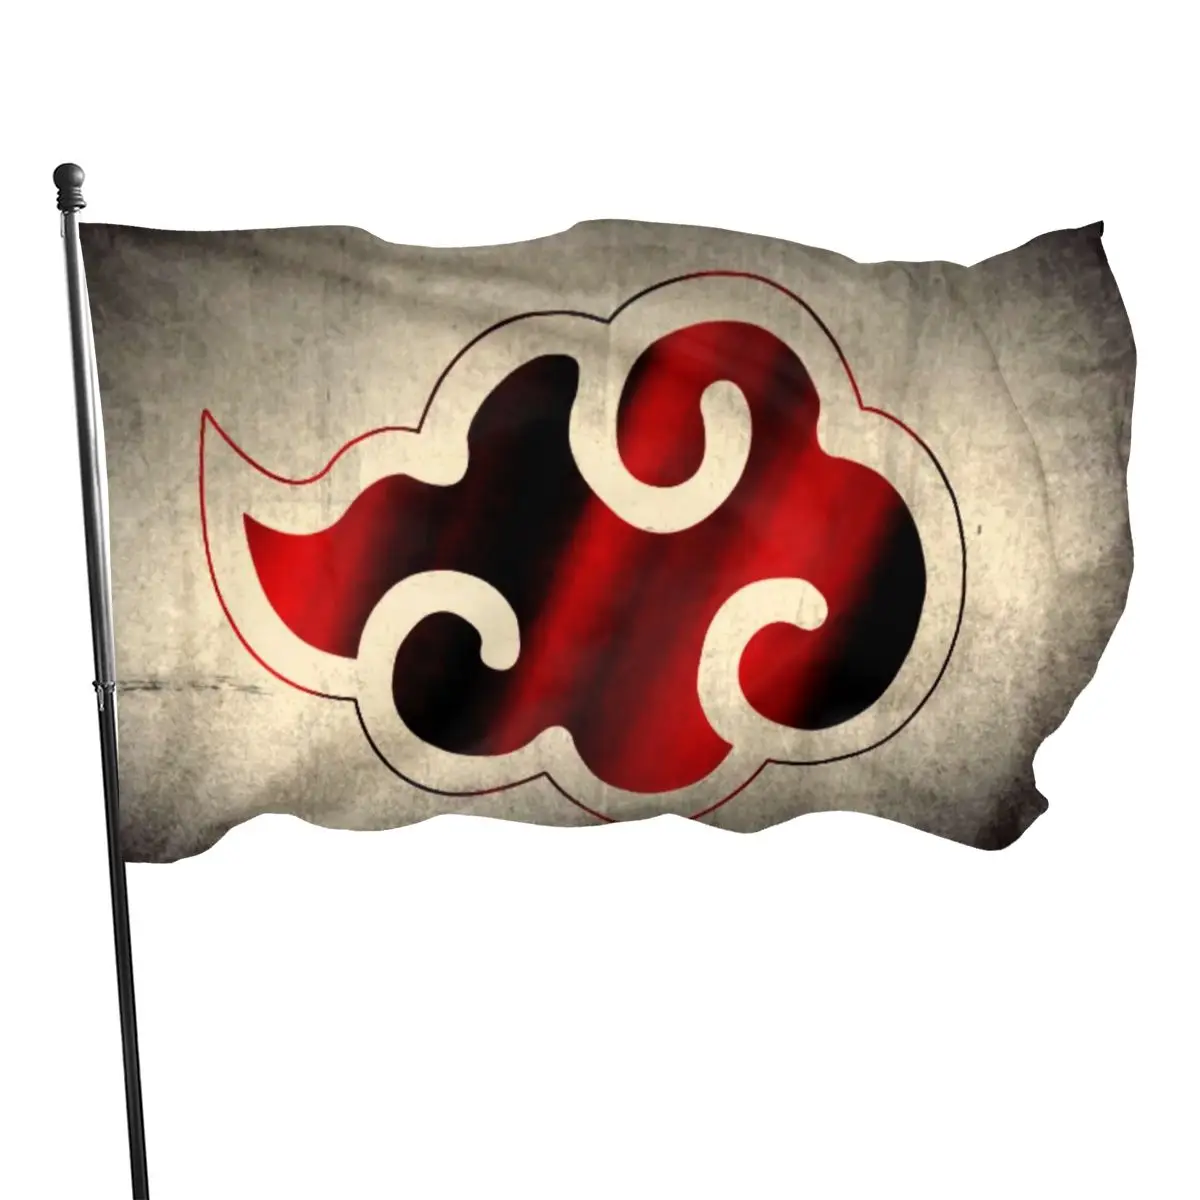 Логотип в виде красного облака японской анимационной организации для украшения